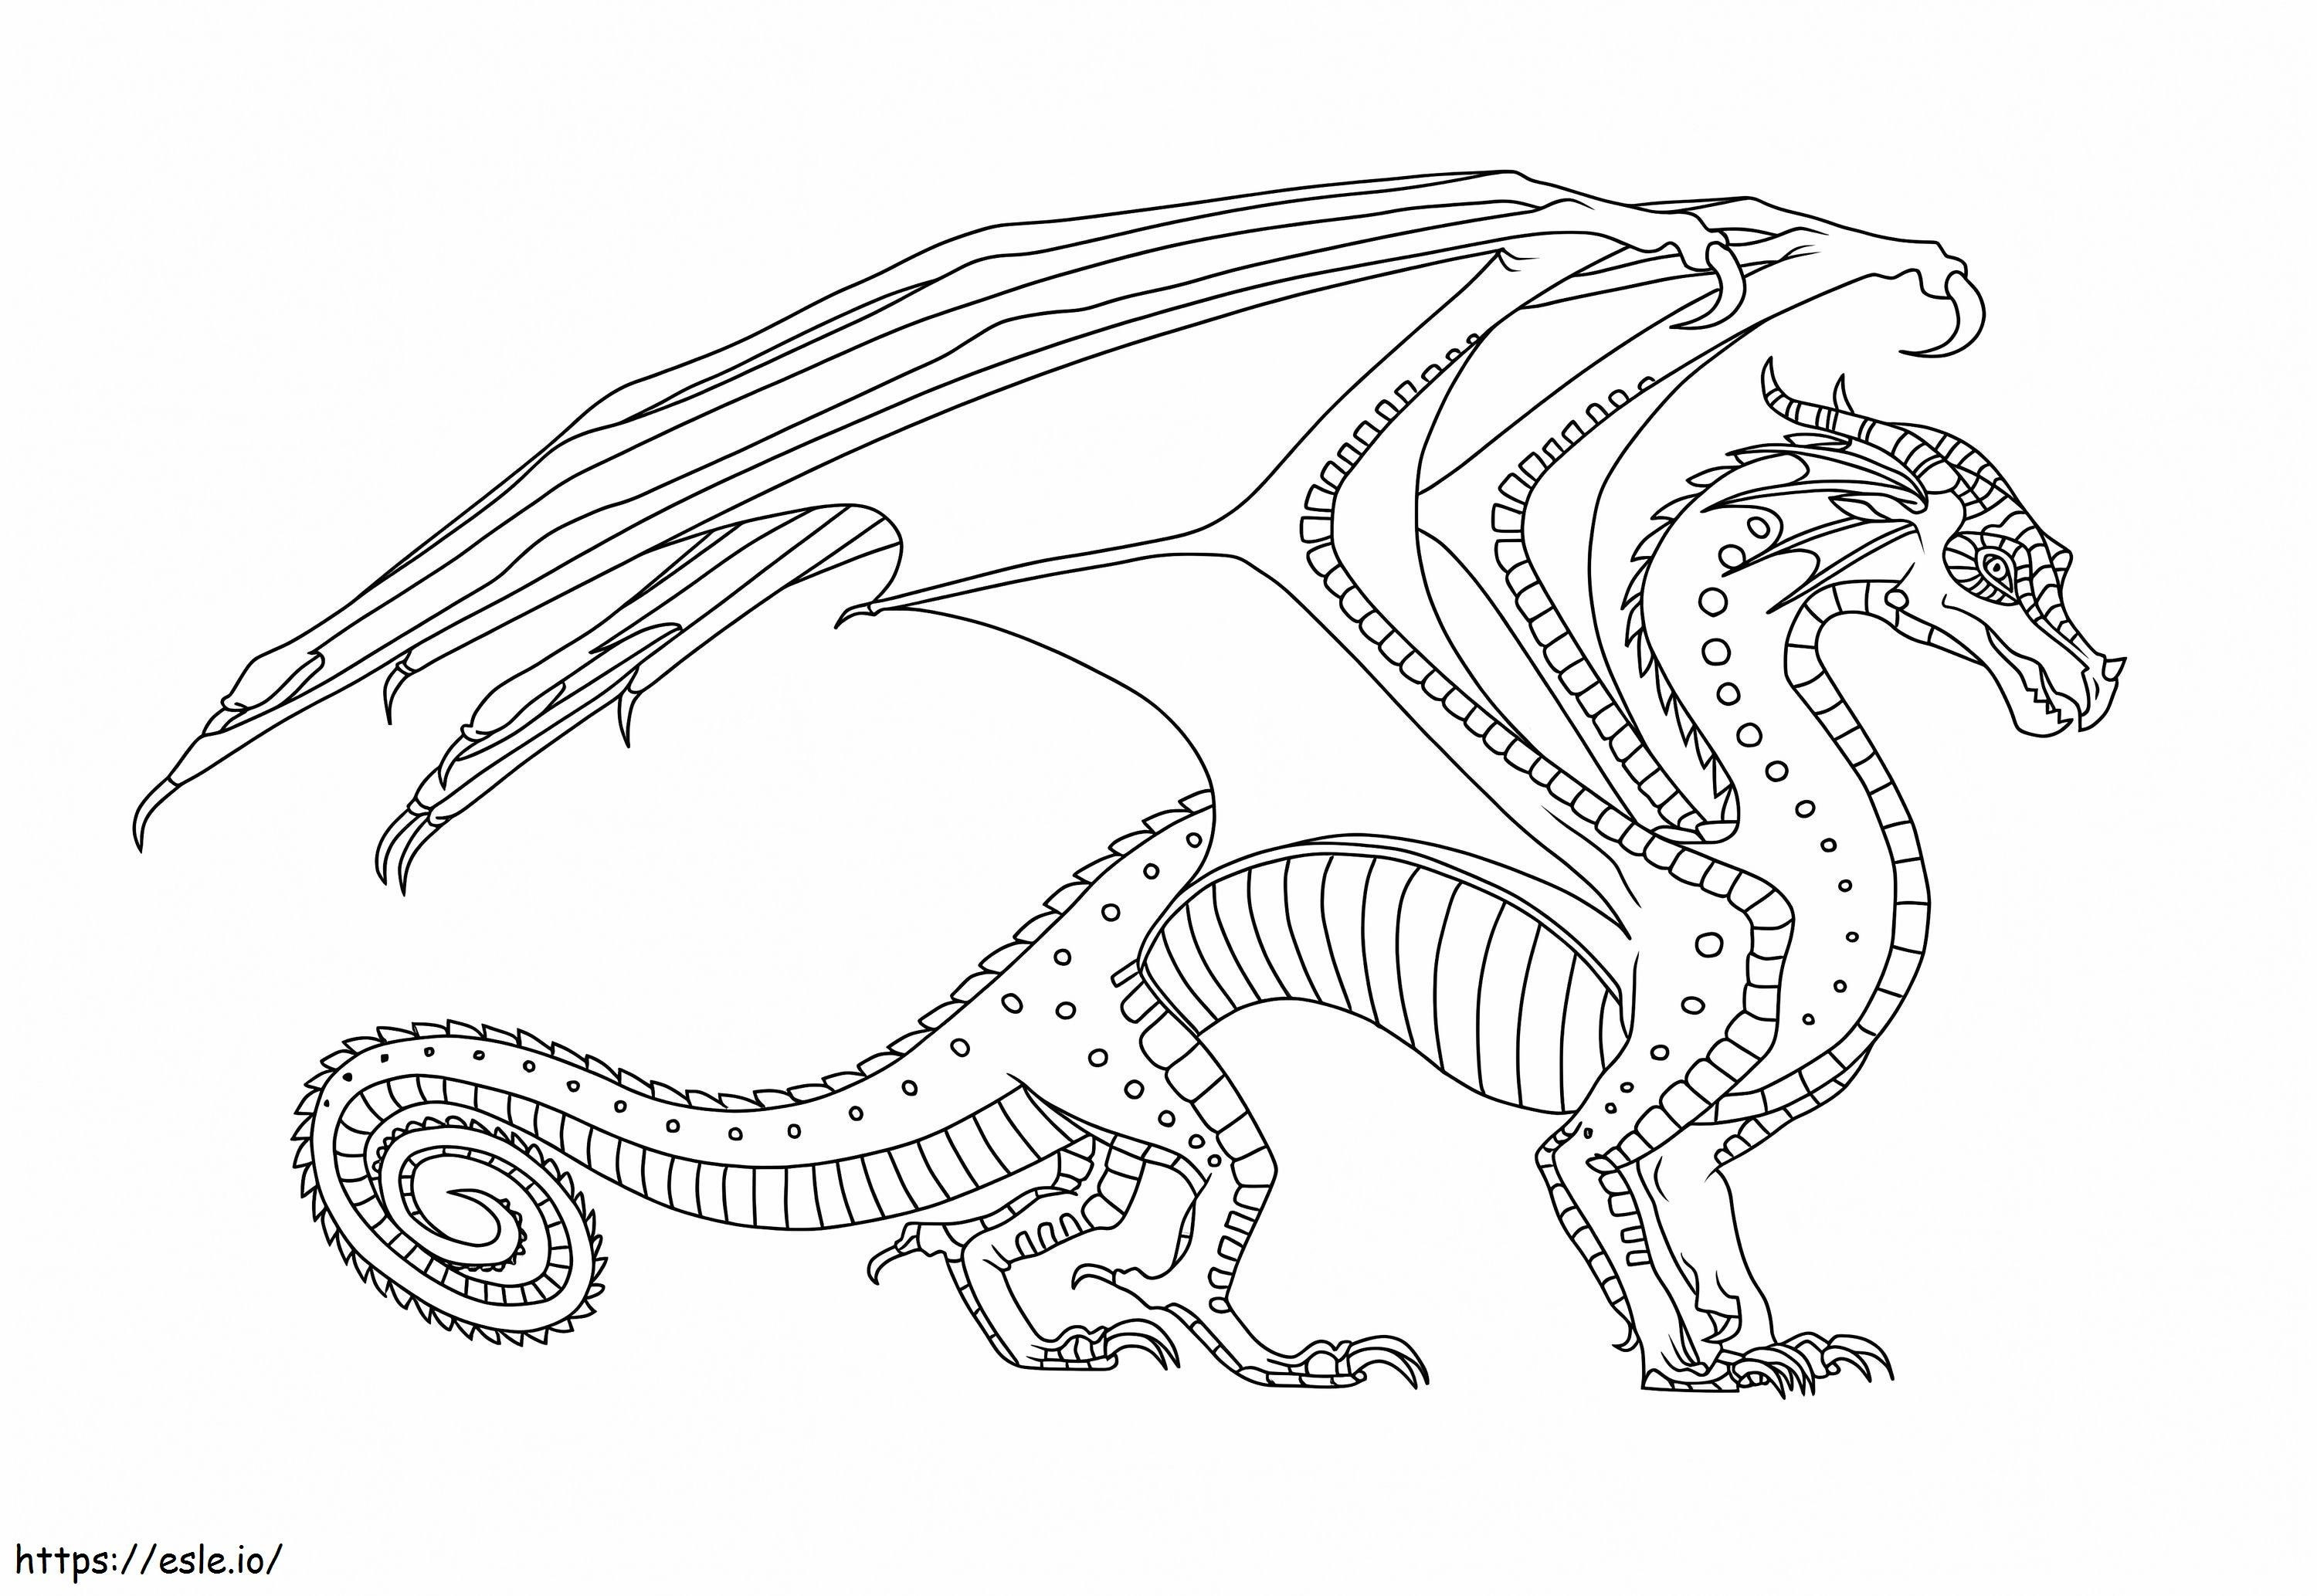 Dragon de bază de colorat